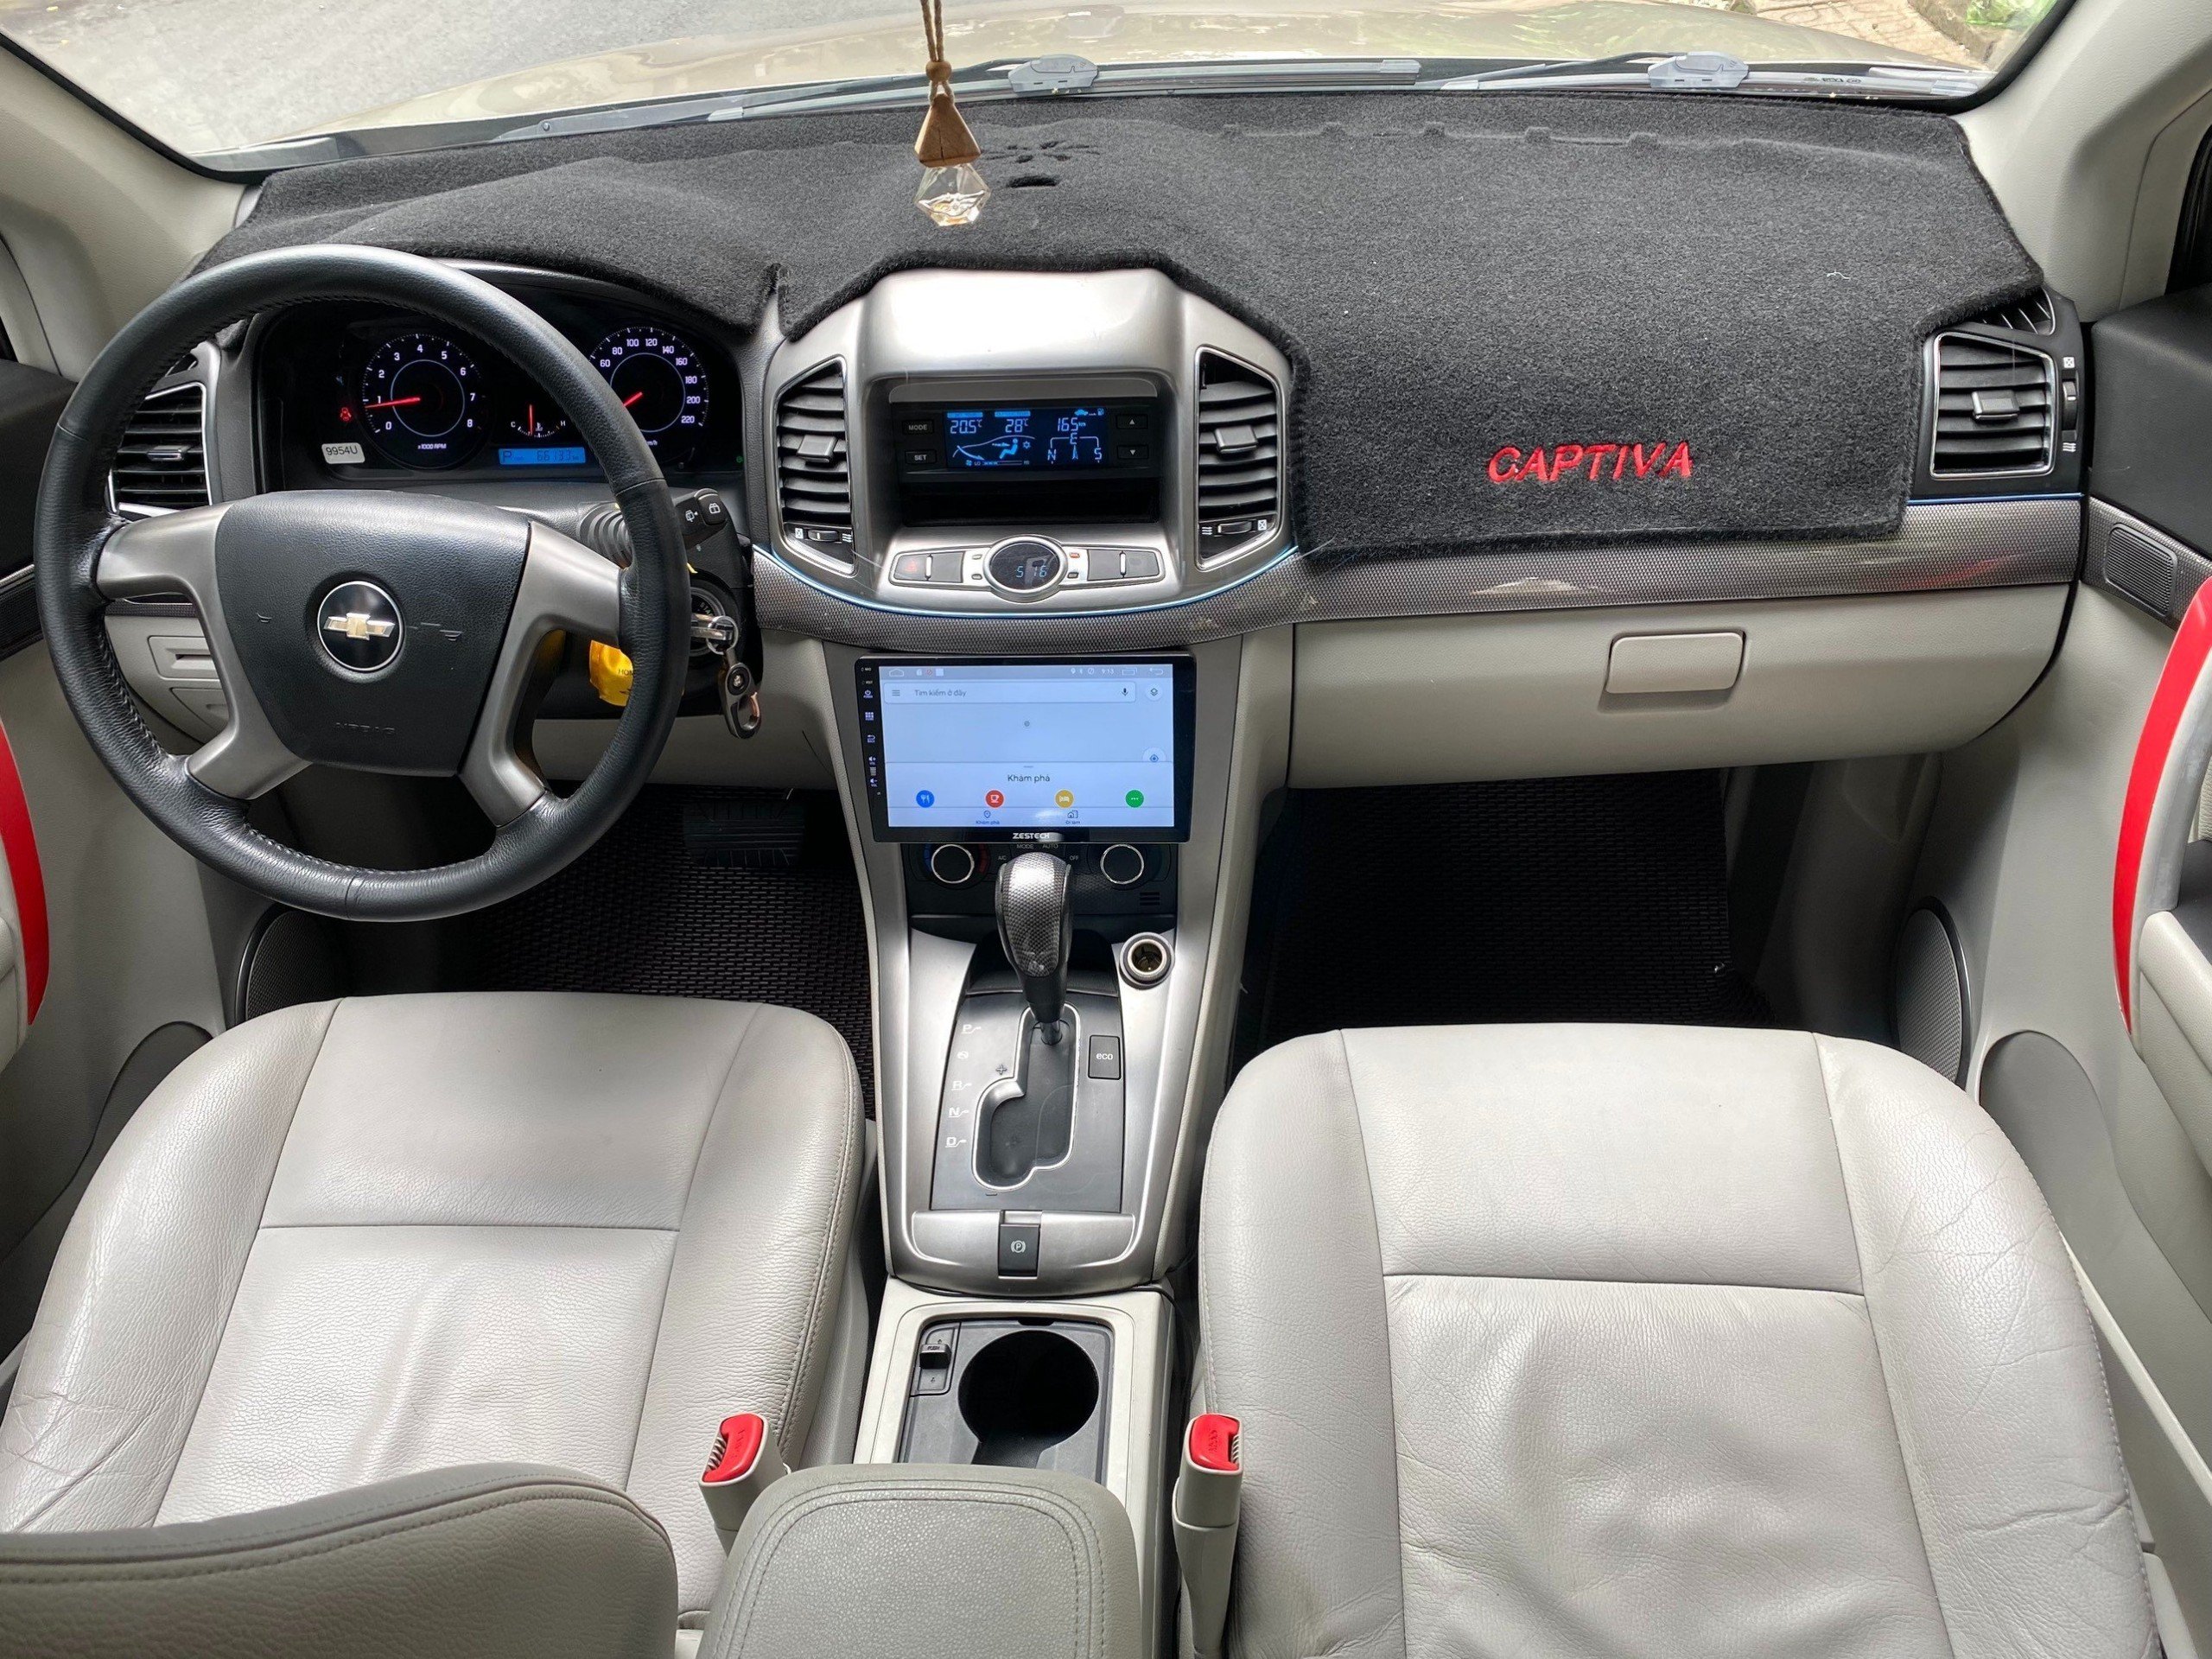 Cần bán chiếc xe Chevrolet Captiva LTZ 2014 MÀU VÀNG NGHI